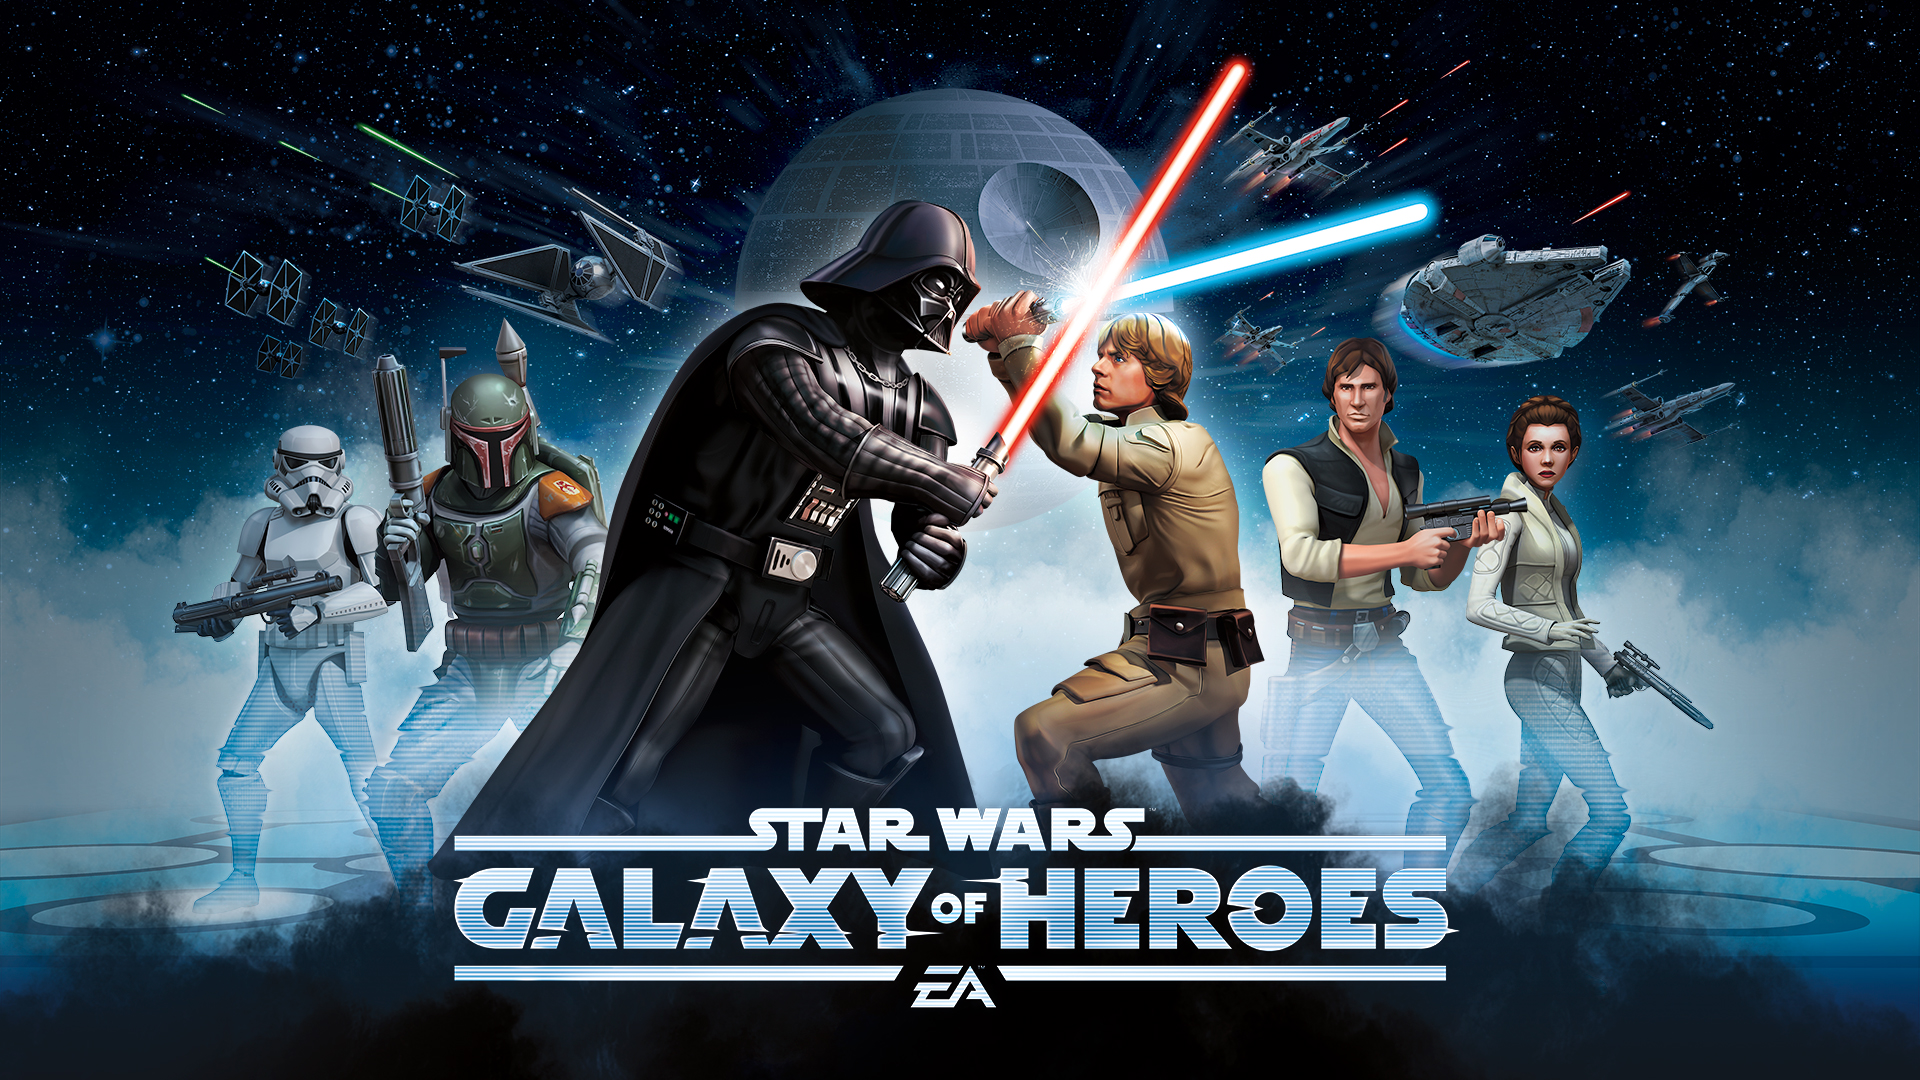 star wars galaxies of heroes Star Wars Galaxies of heroes annoncé sur mobiles !